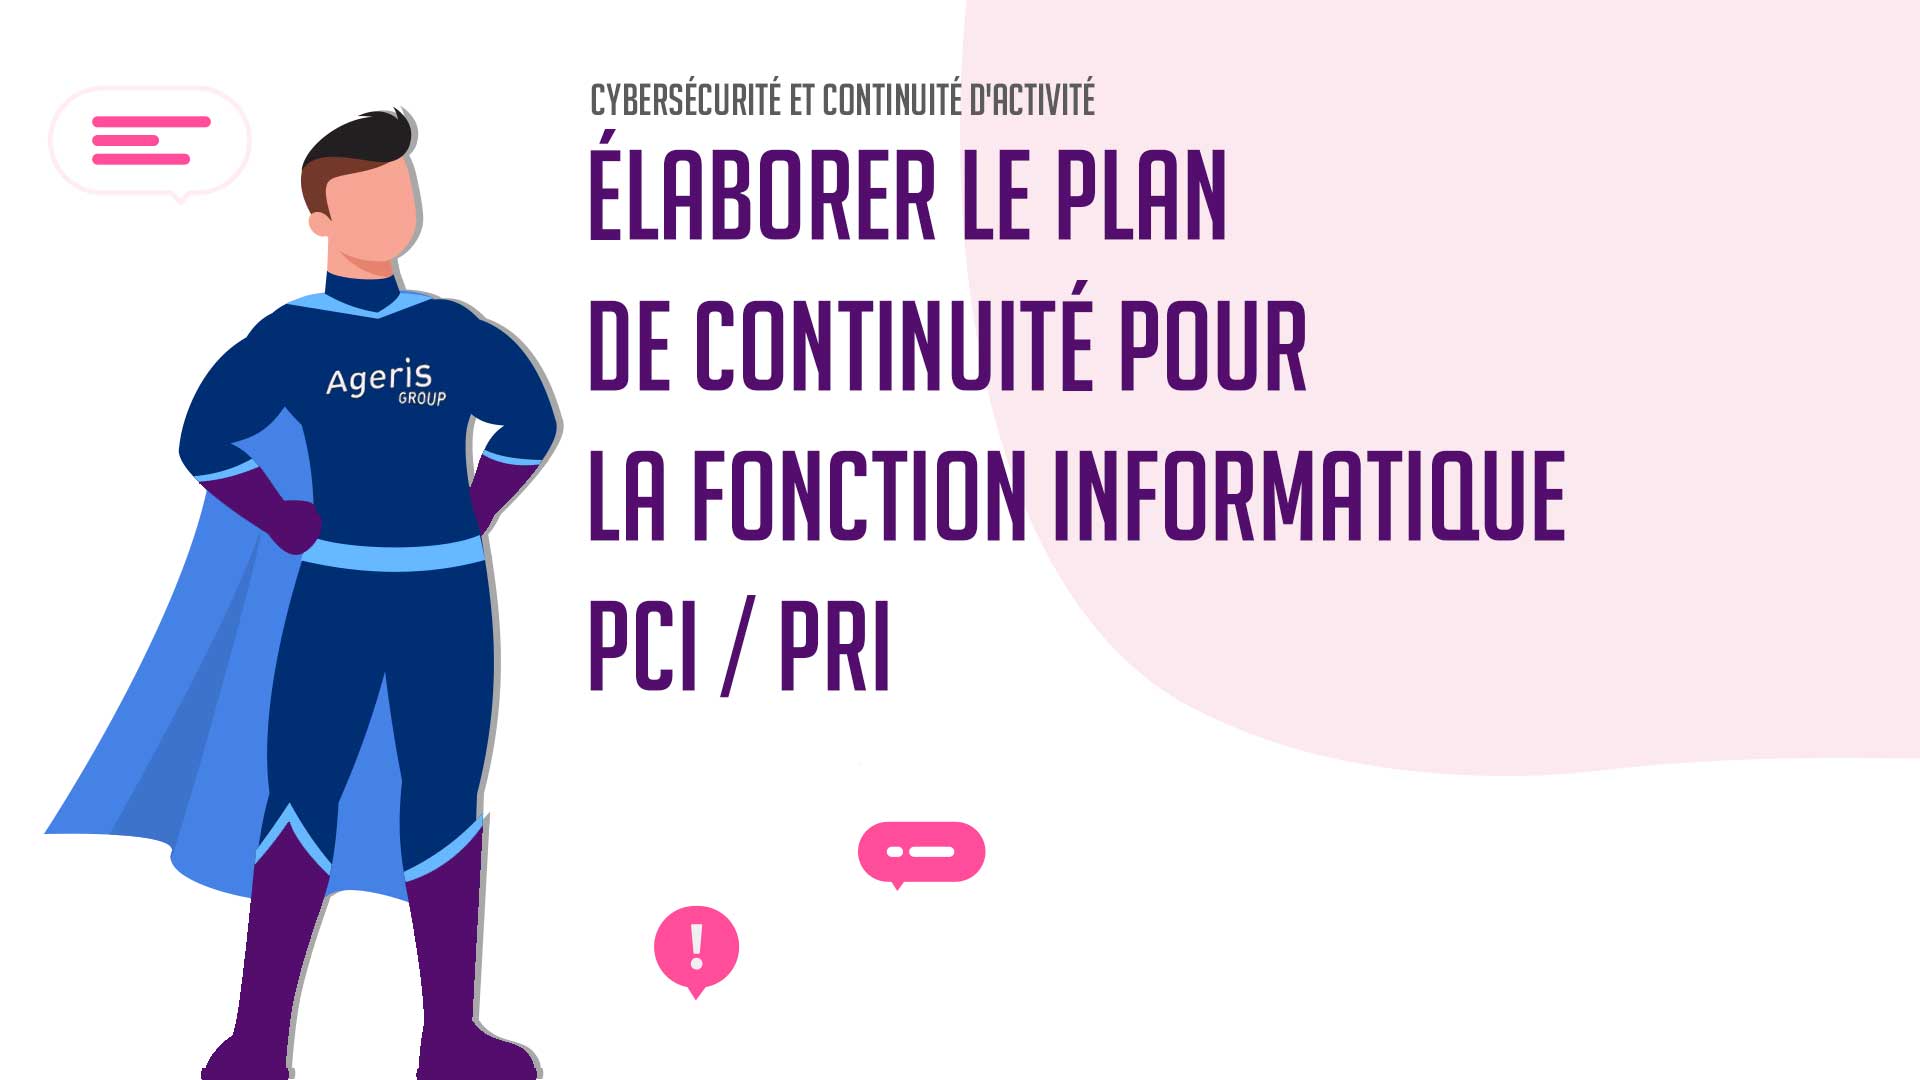 Elaborer le plan de continuité pour la fonction informatique – PCI PRI